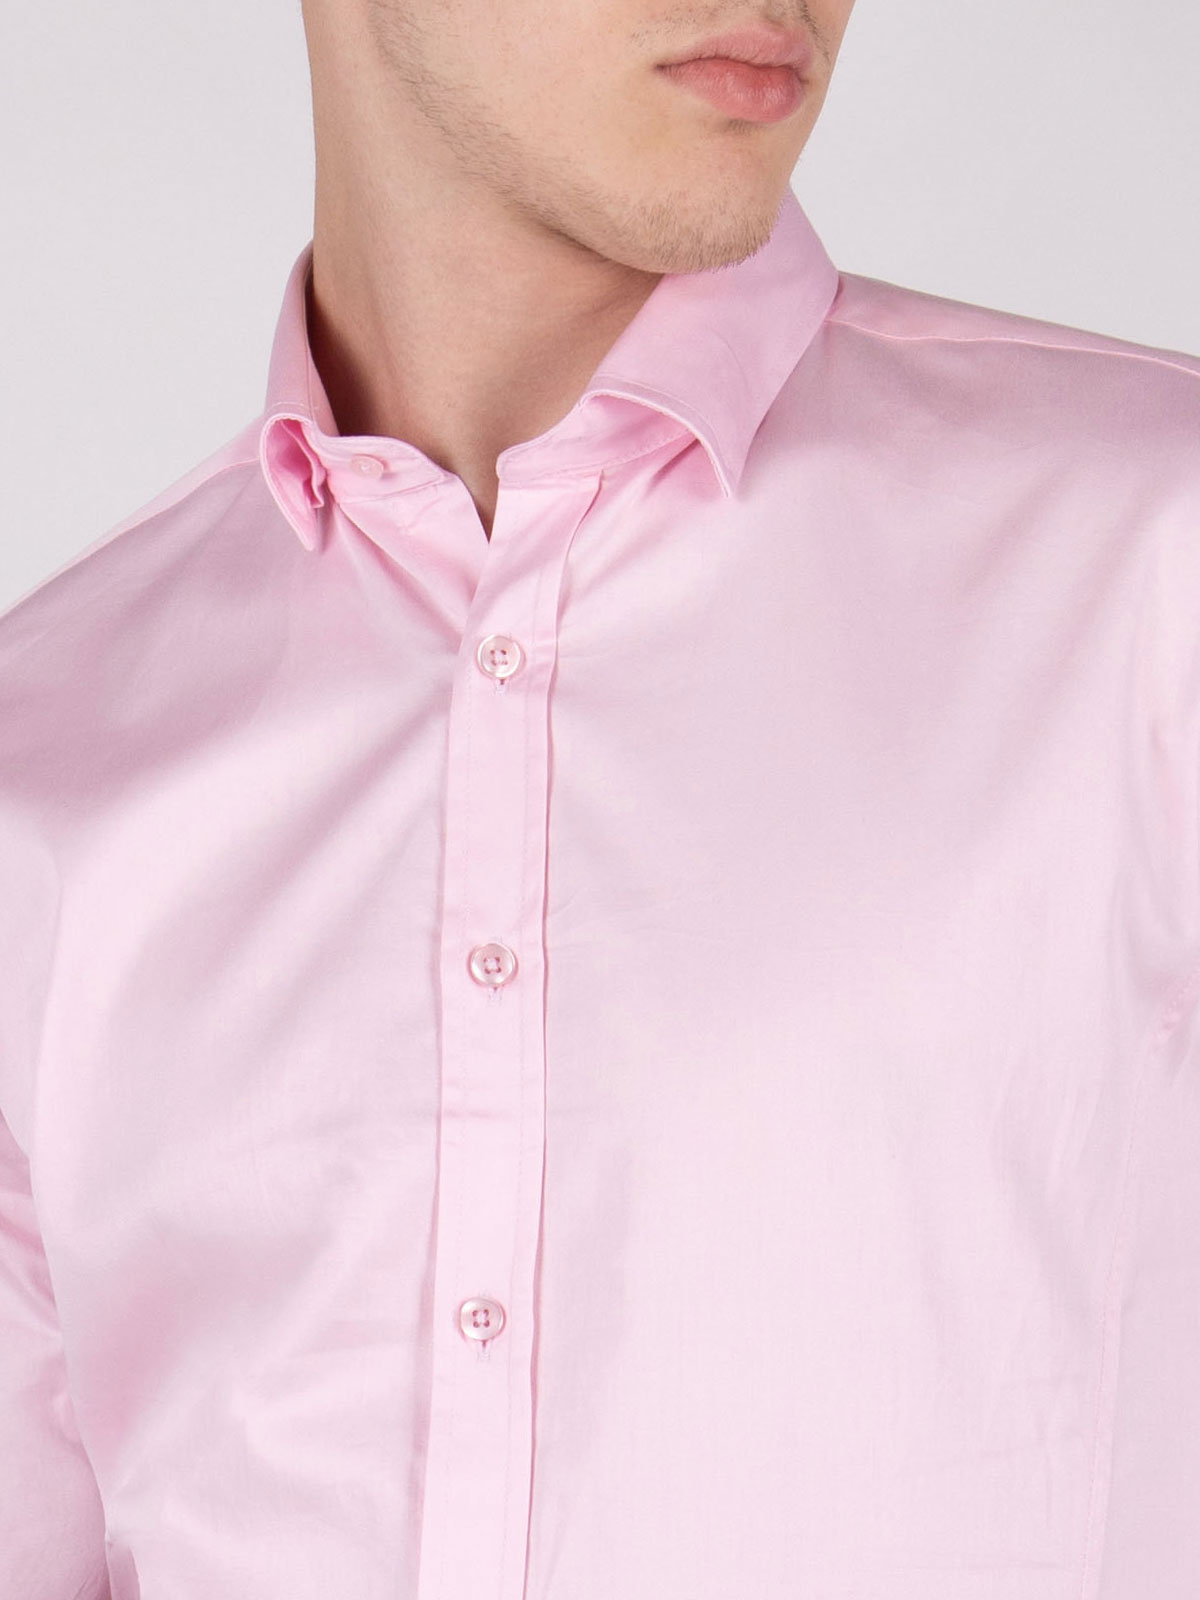 Κλασικό ανοιχτό ροζ πουκάμισο - 21470 € 38.81 img3